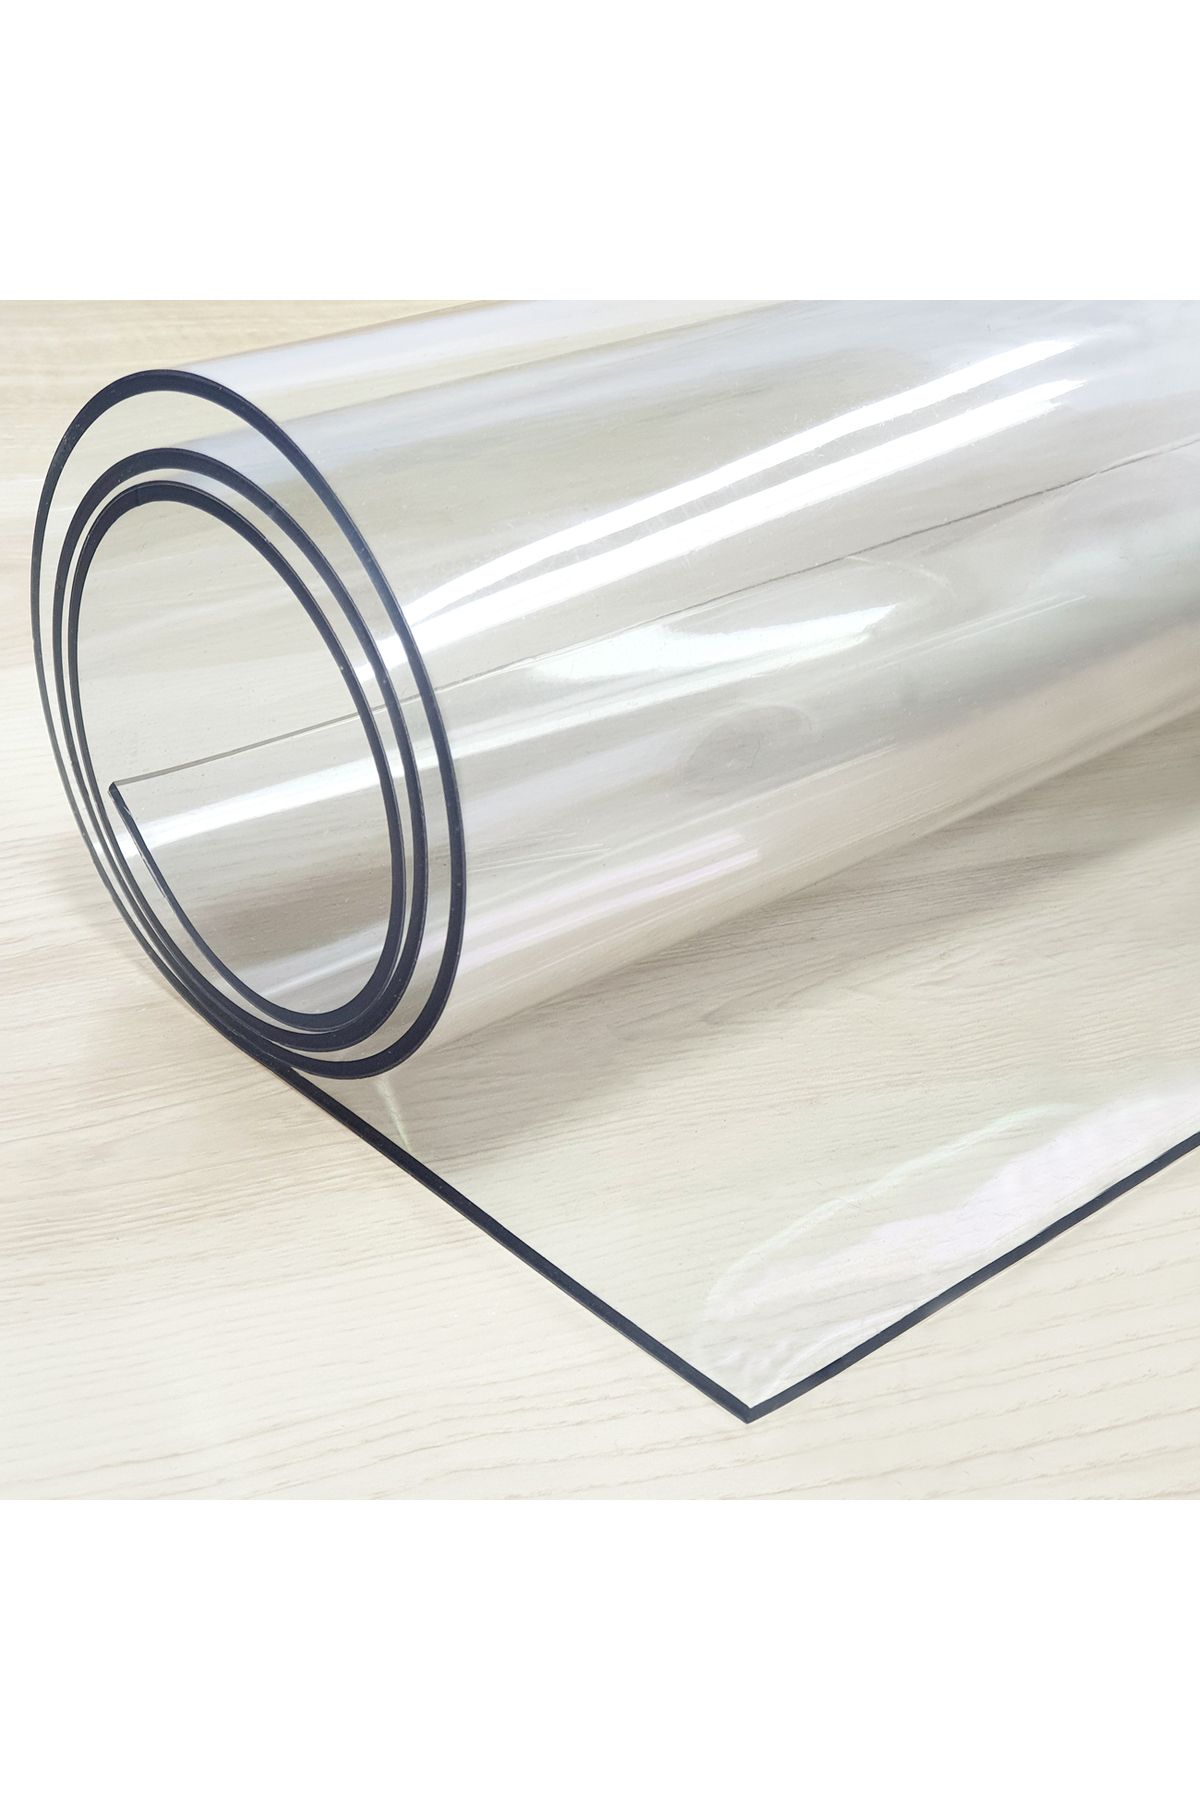 Dia Şeffaf Kalın 3,5mm PVC Masa Örtüsü Kaymaz Koruyucu